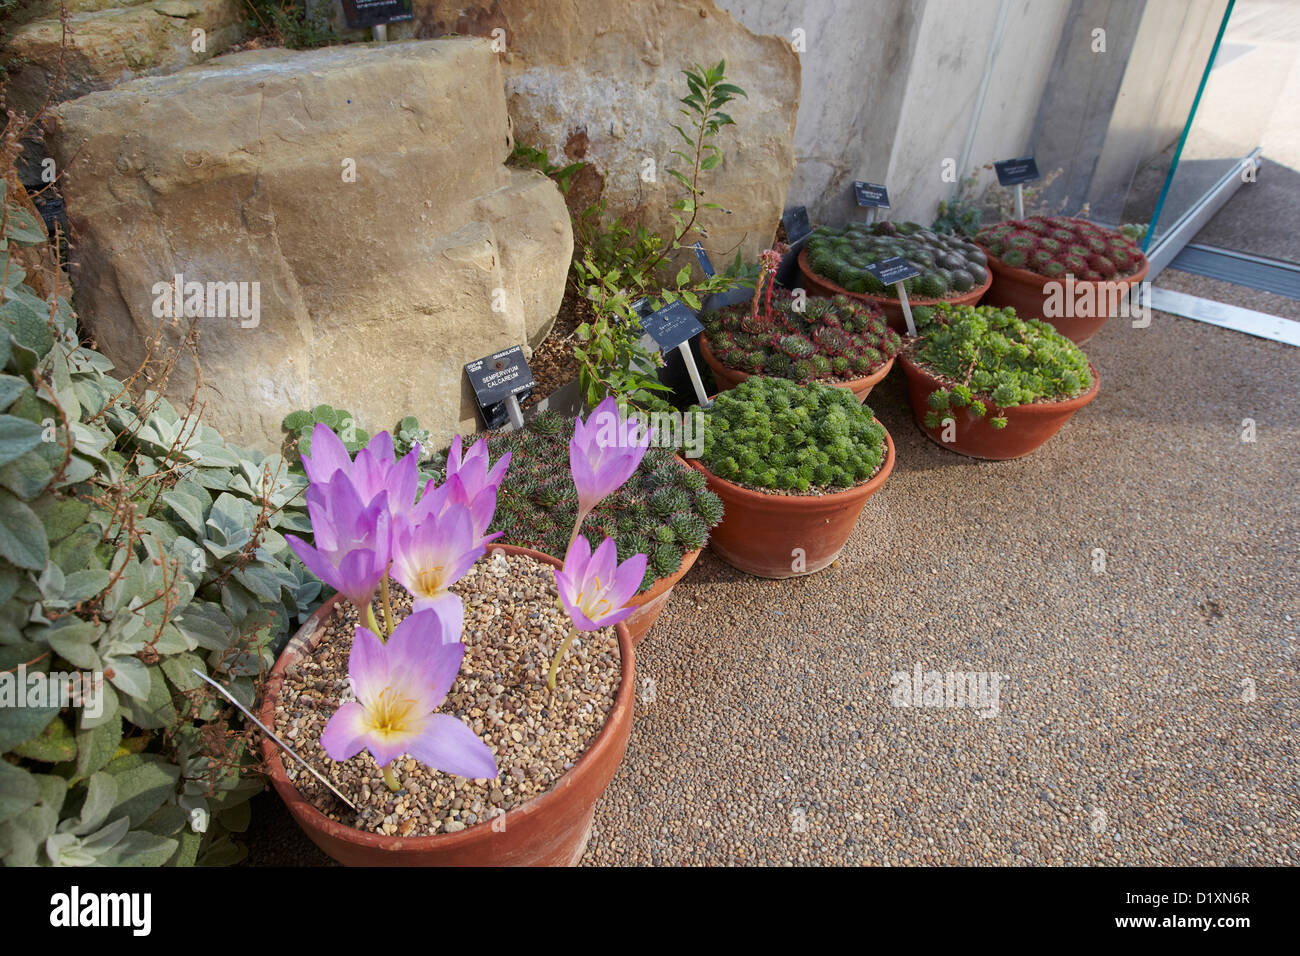 Alpine Pflanzen in Töpfen, die Davies Alpine House, Kew Gardens, London, UK Stockfoto